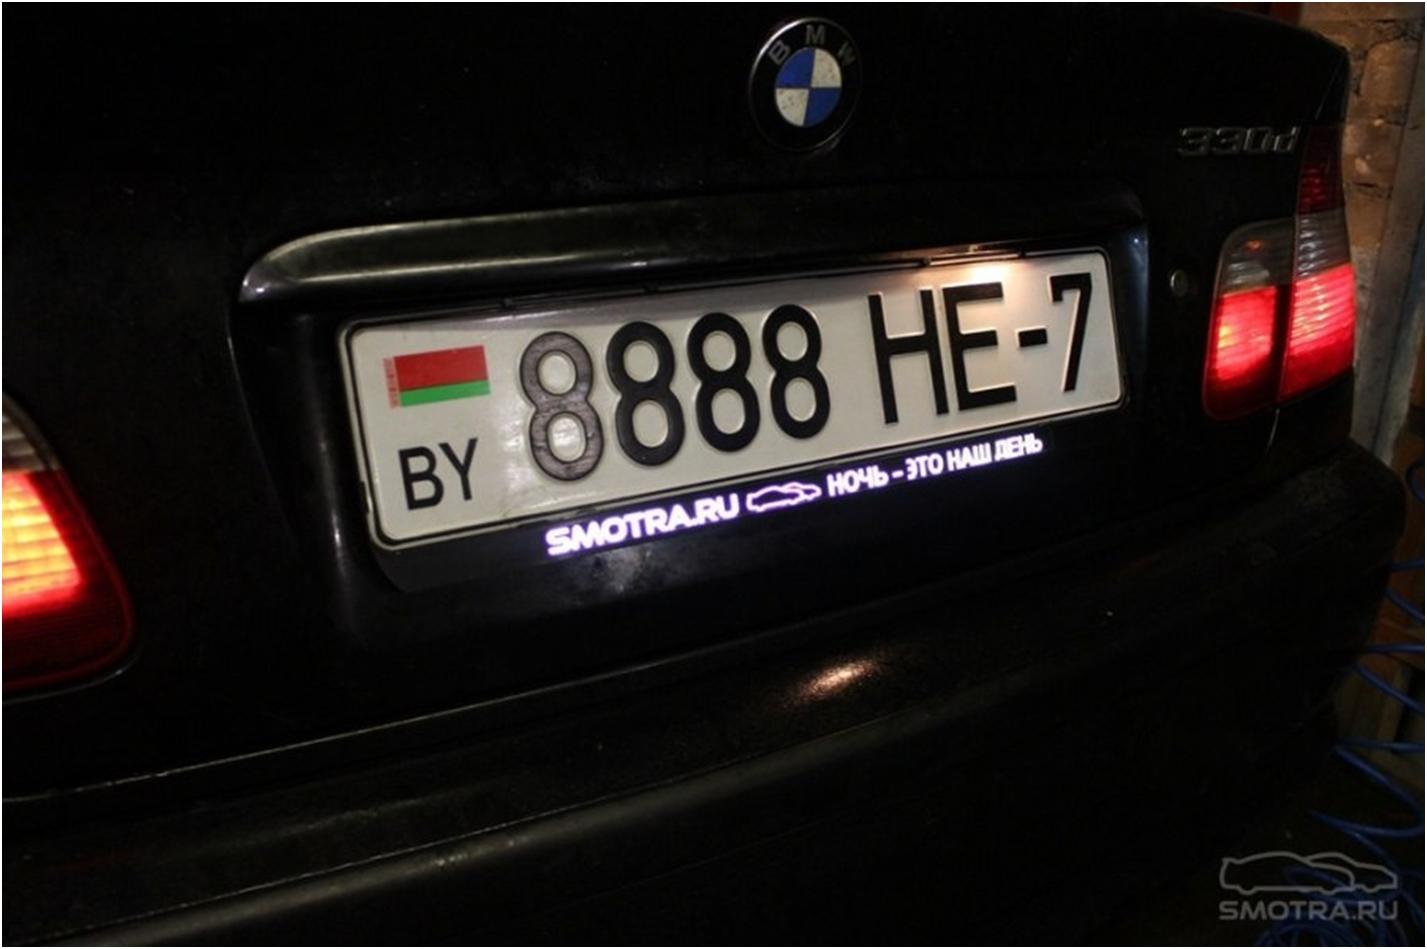 Рамка для автомобиля с подсветкой. Рамка номерного знака BMW. Рамка номера 2101-07 с подсветкой. Рамка номерного знака с подсветкой номера.